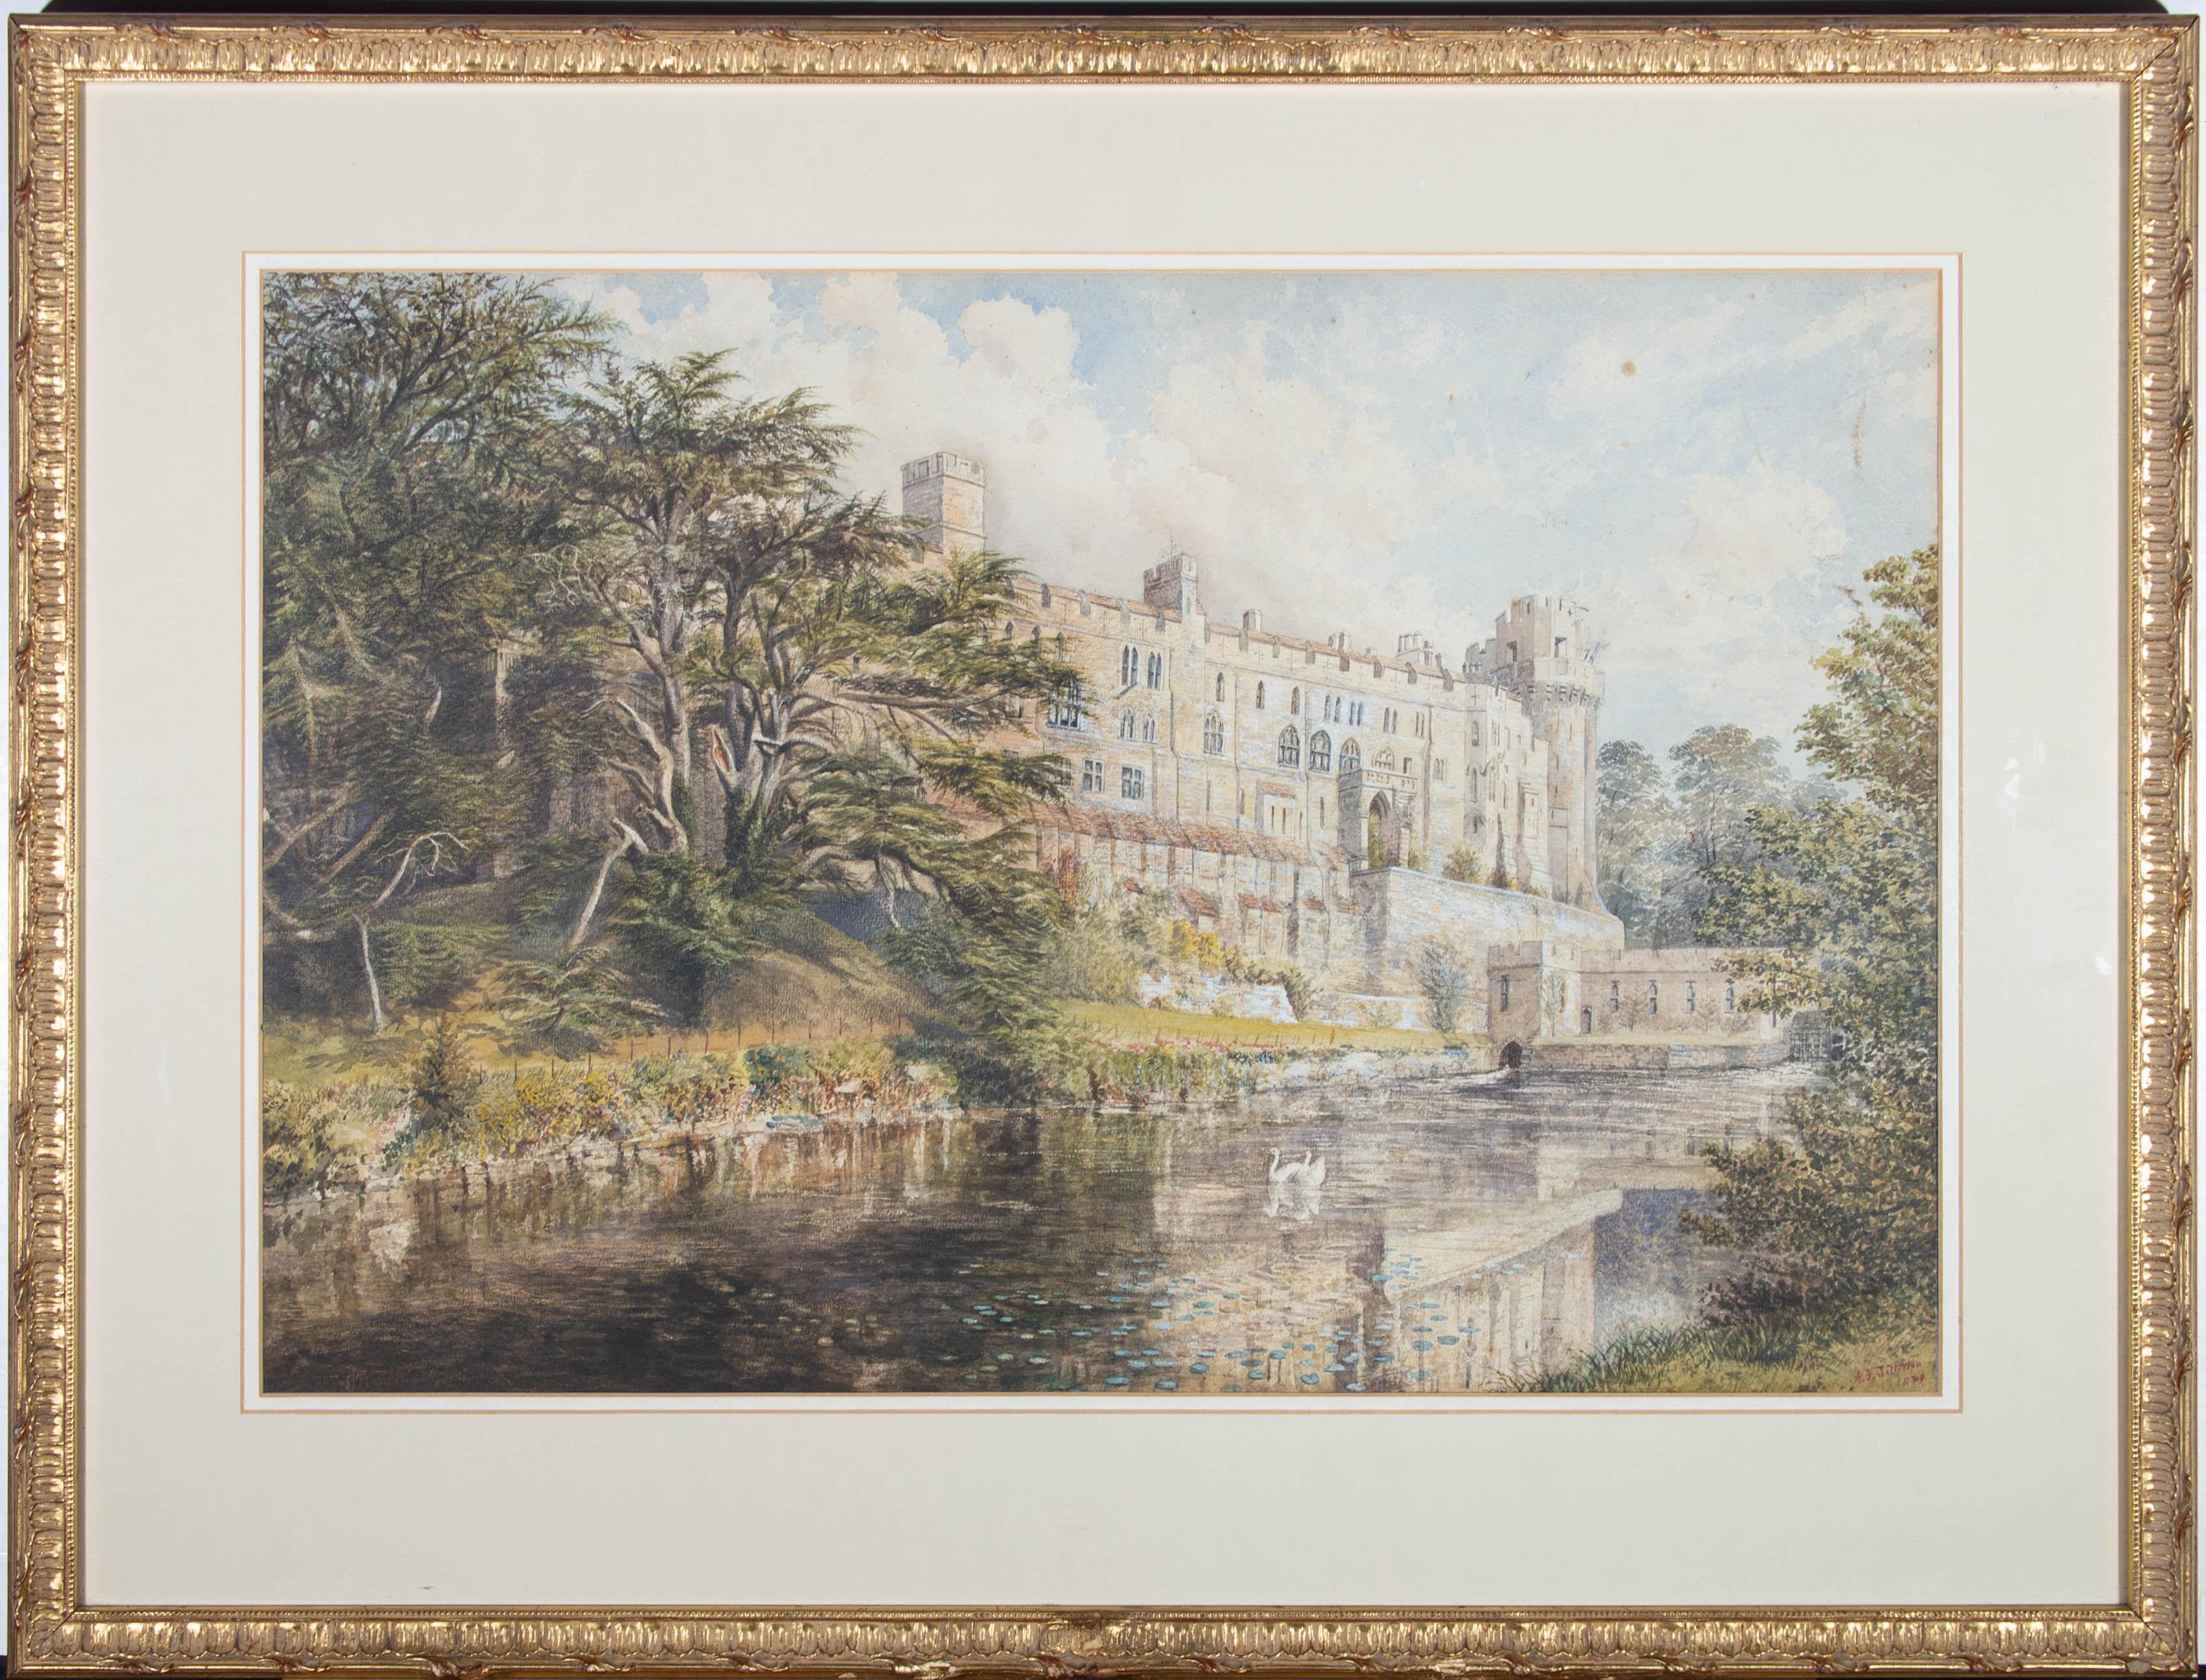 Eine beeindruckende architektonische Ansicht der Burg von Warwick vom Fluss aus. Die Szene spielt an einem idyllischen Sommertag mit Schwänen, die auf dem spiegelglatten Wasser schwimmen, umgeben von Seerosenblättern und unter einem blauen Himmel